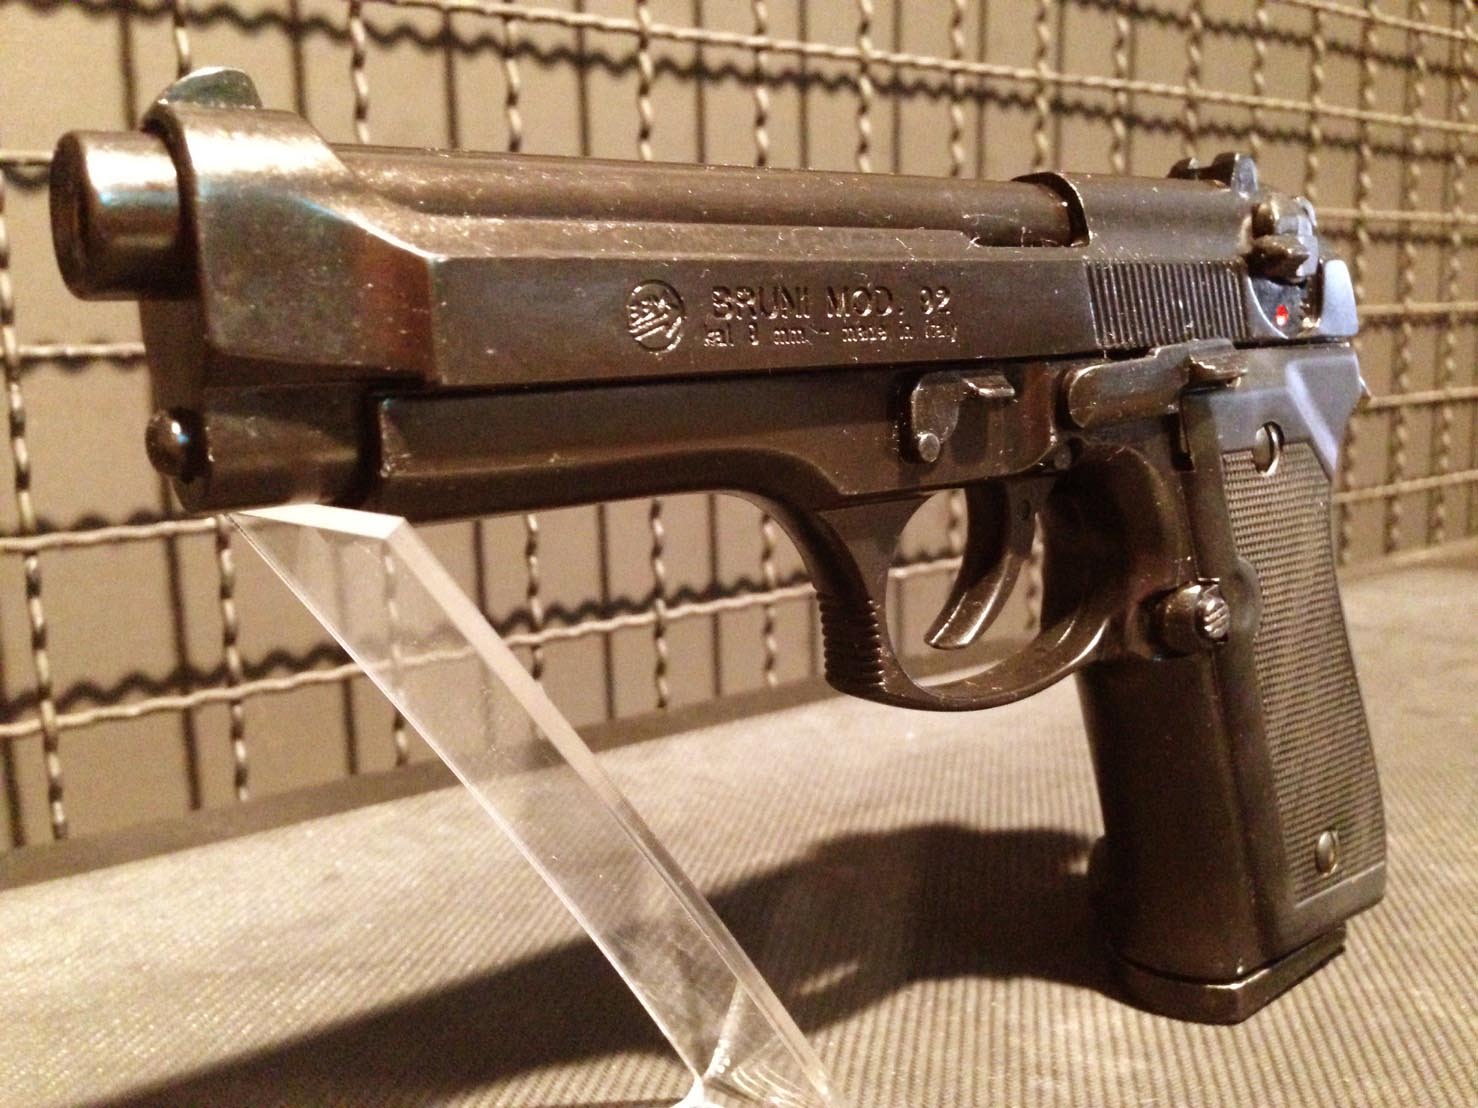 รูปภาพของ Blank แบลงค์กัน M92 fs ปืนสุดคลาสสิคยุค 90 หรือที่เรียกขานกันว่า ปืนพระเอก ต้นตำรับจากอิตาลี สีรมดำด้าน สวย ดุ ดิบ คลาสสิค Made in Italy